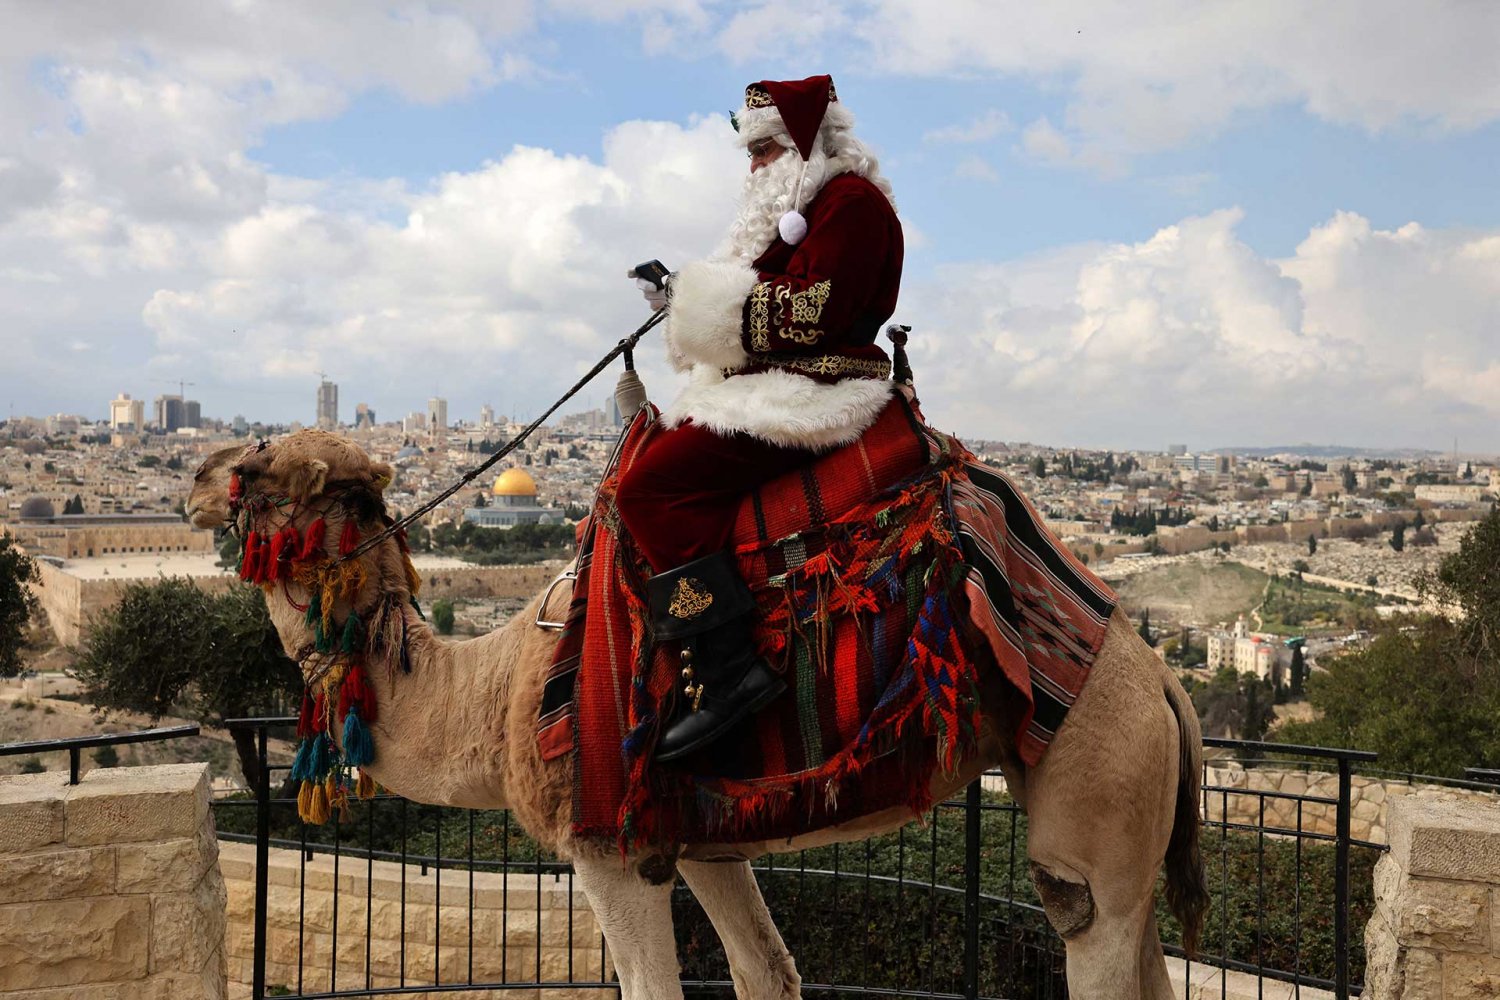 Jerusalem’s Santa Claus sits on a camel looking over Jerusalem's Old City